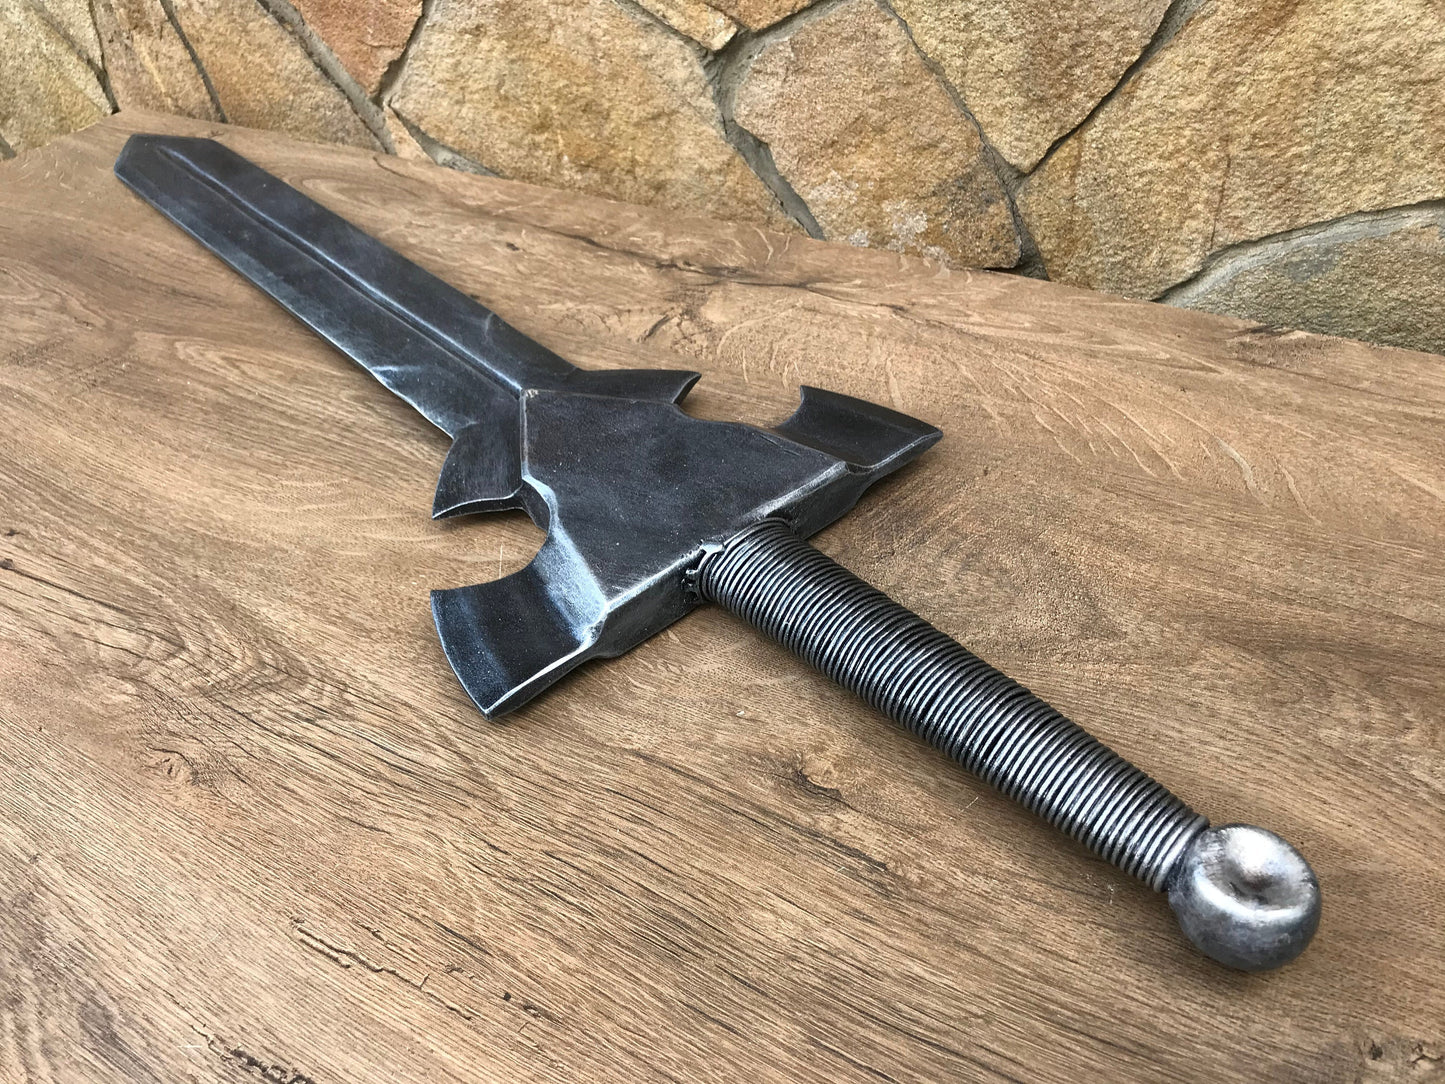 Decorative sword, cosplay sword, replica sword, viking sword, cosplay weapon, cosplay armor, viking axe,  gift for men, sword gift, axe